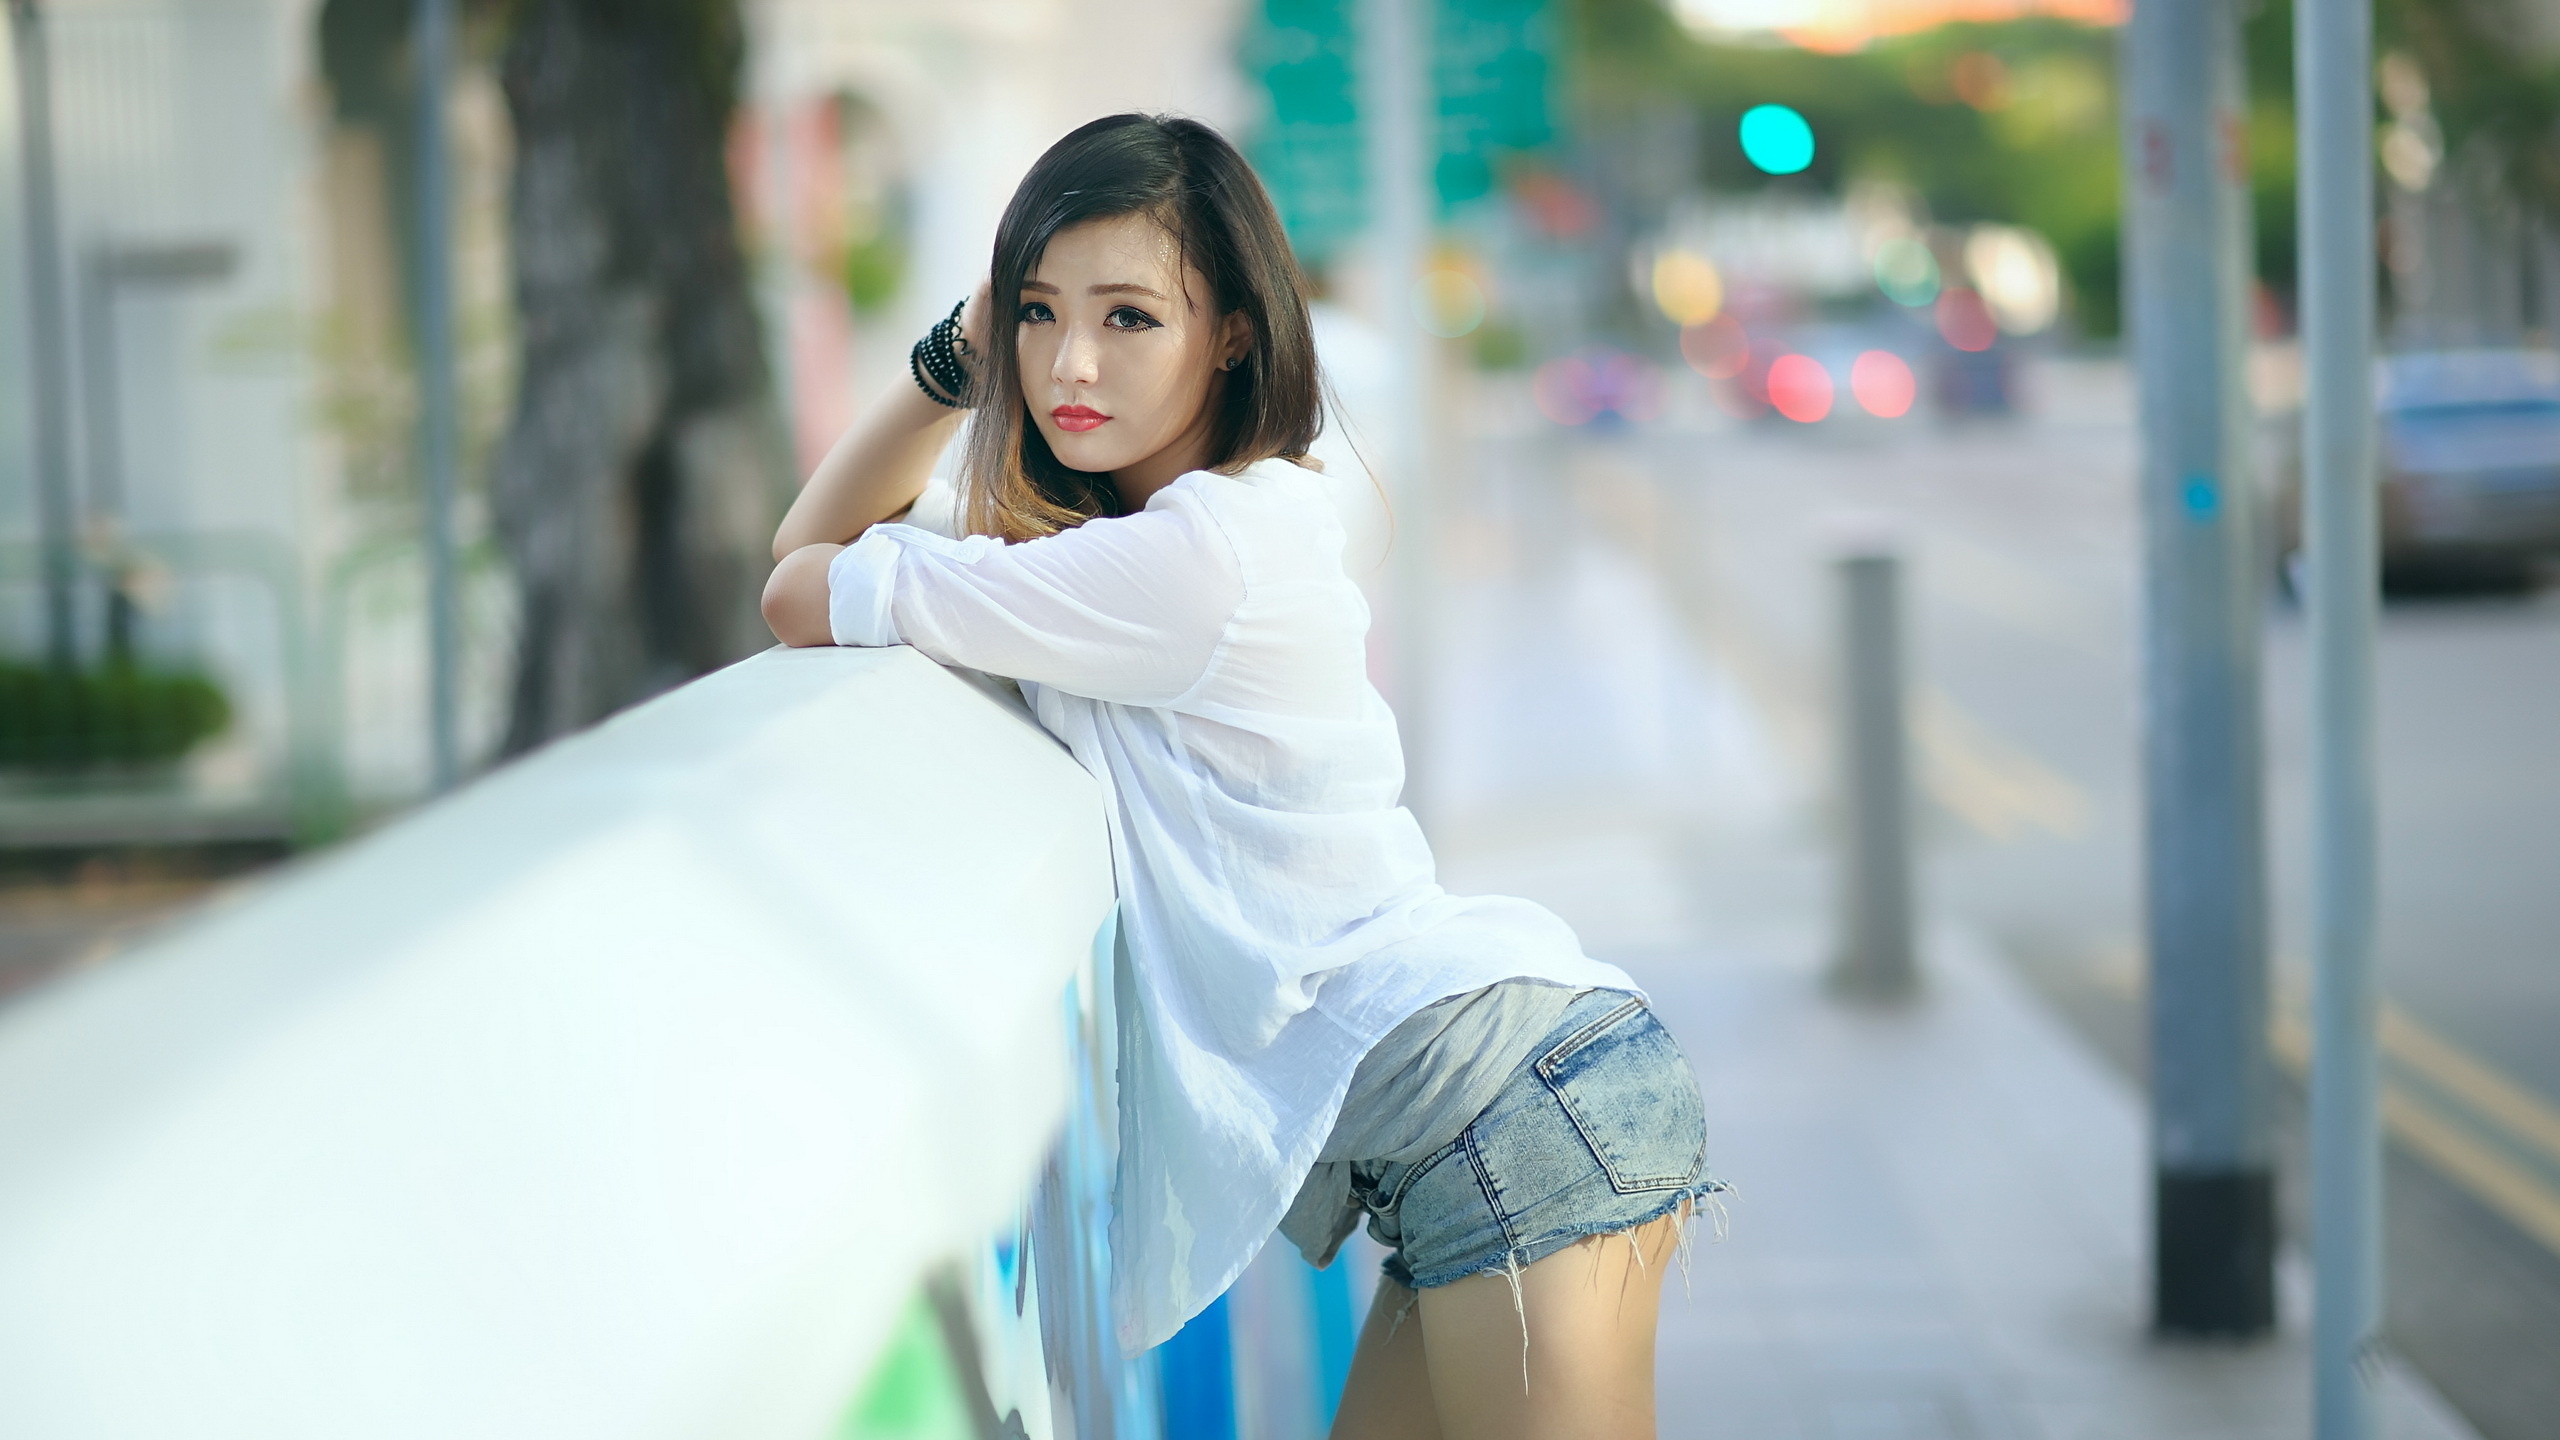 Красивые девушки азиатки